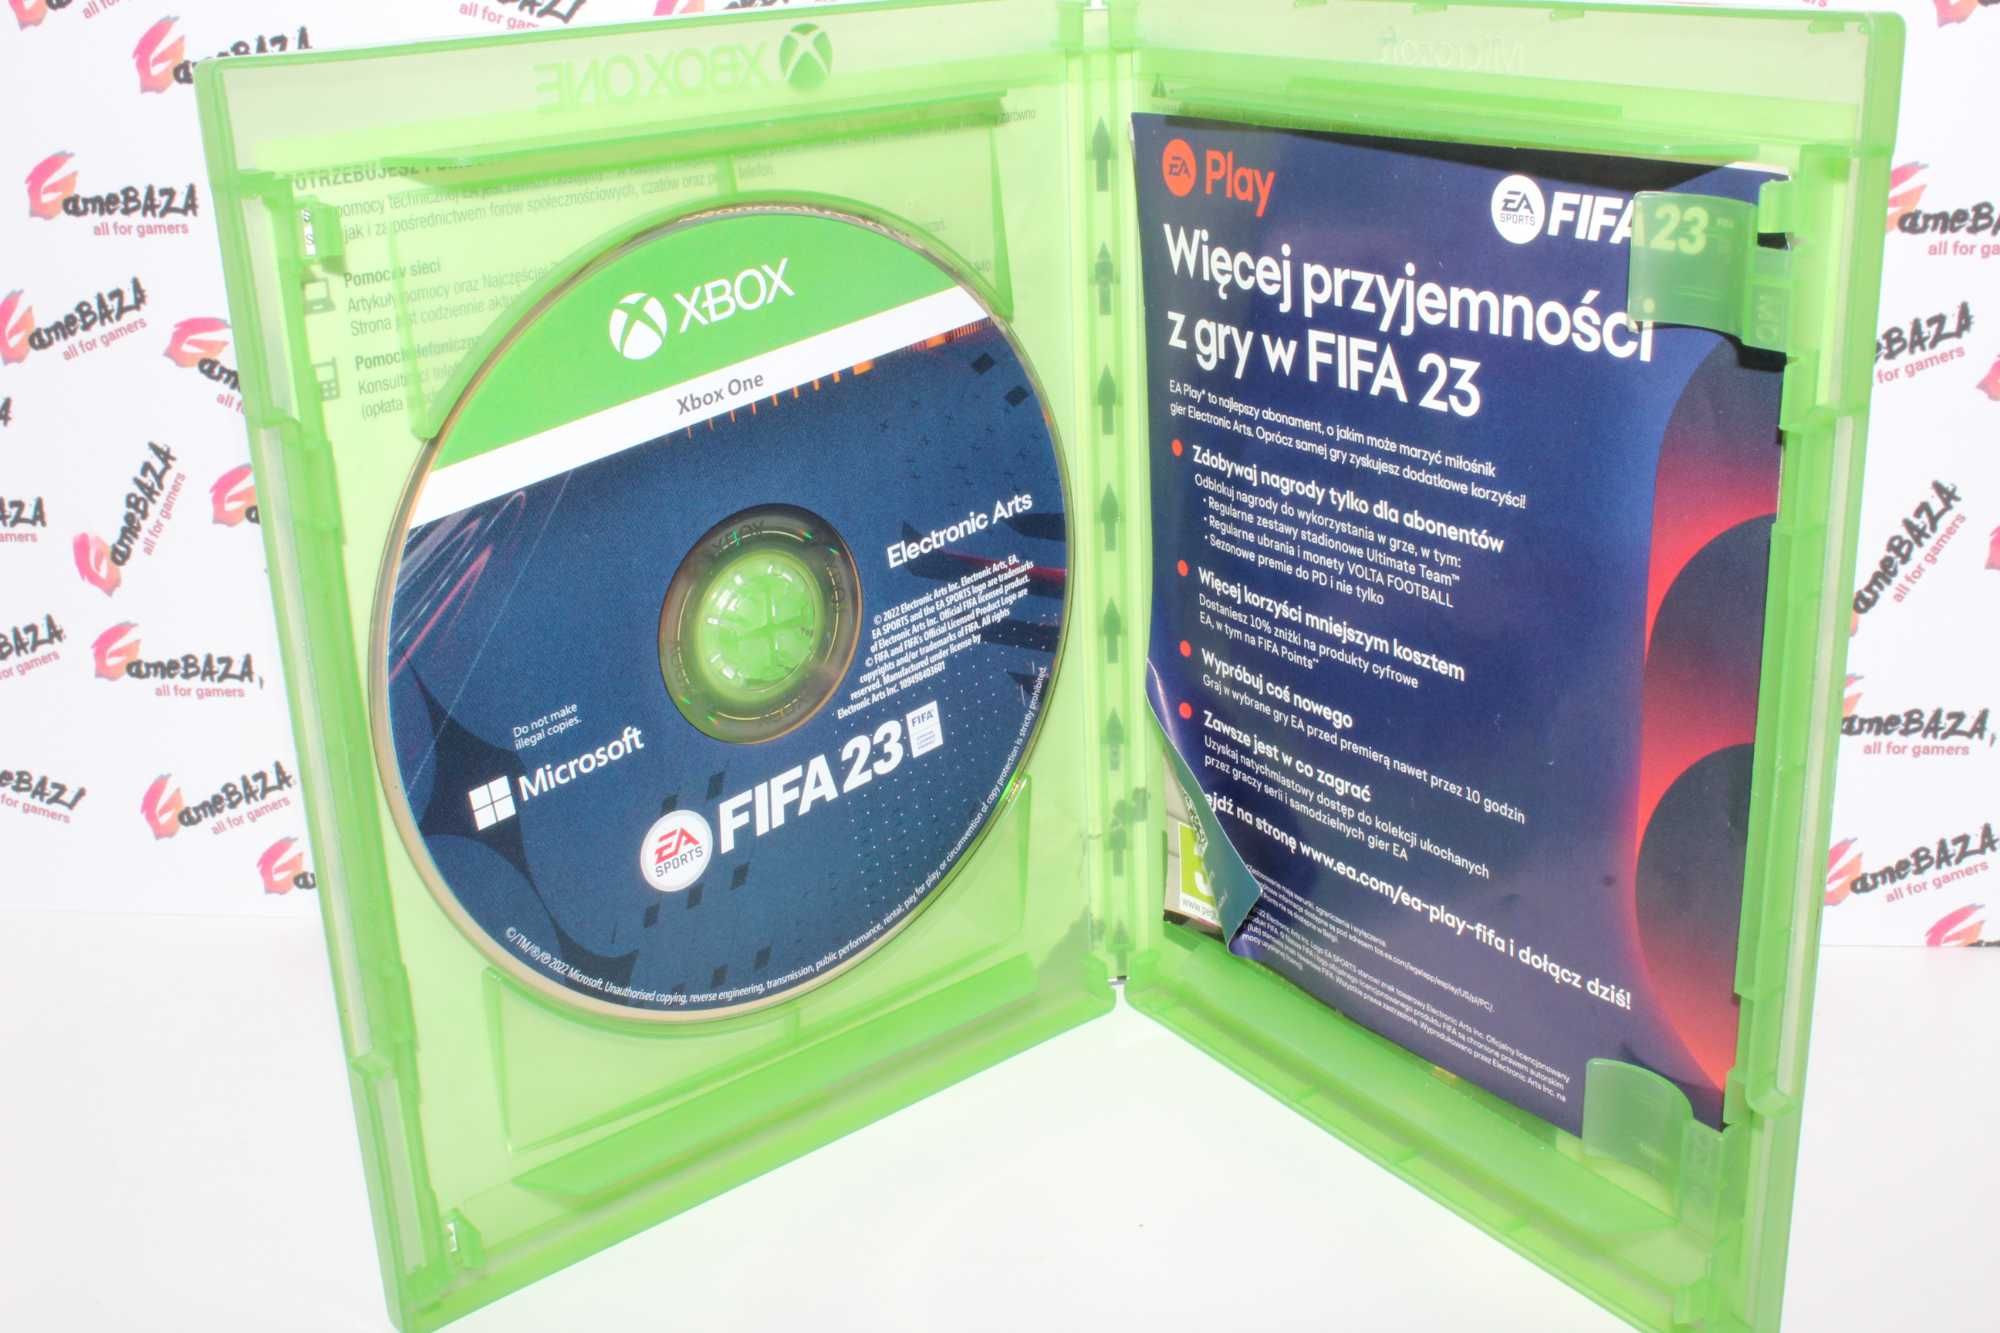 => FIFA 23 Xbox One GameBAZA